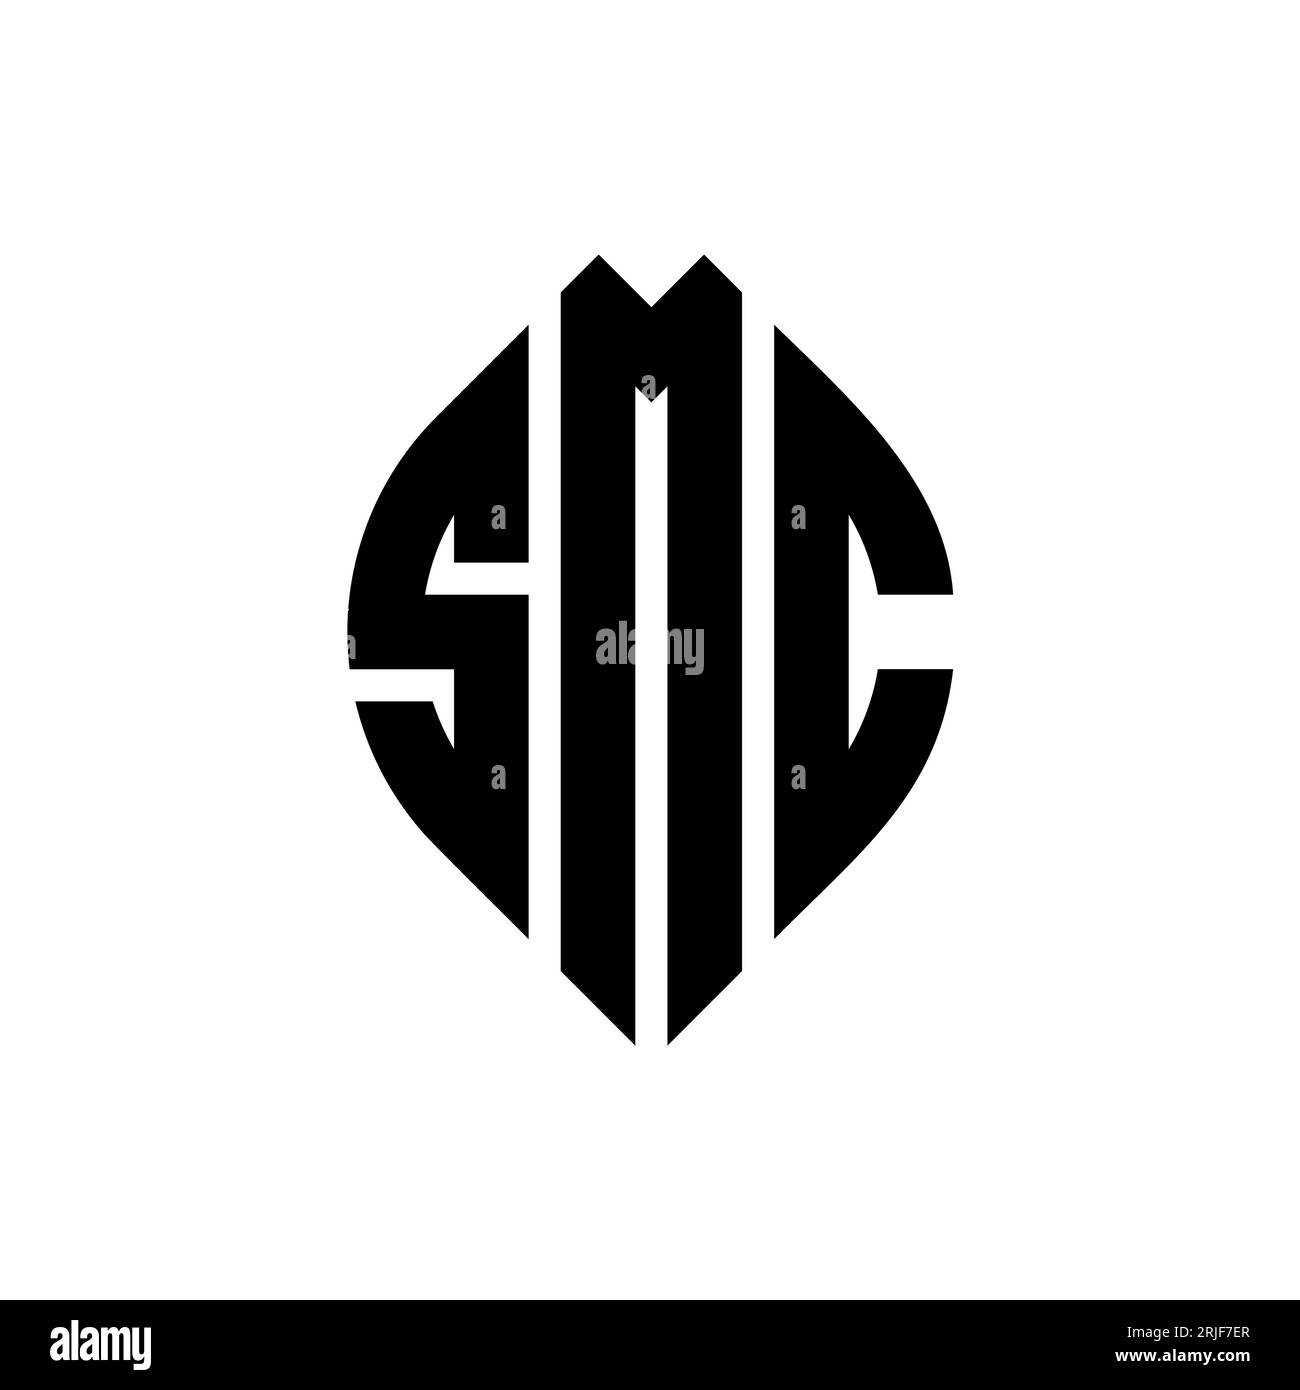 SMC kreisförmiges Logo mit Kreis- und Ellipsenform. SMC-Ellipsenbuchstaben im typografischen Stil. Die drei Initialen bilden ein kreisförmiges Logo. SMC CI Stock Vektor